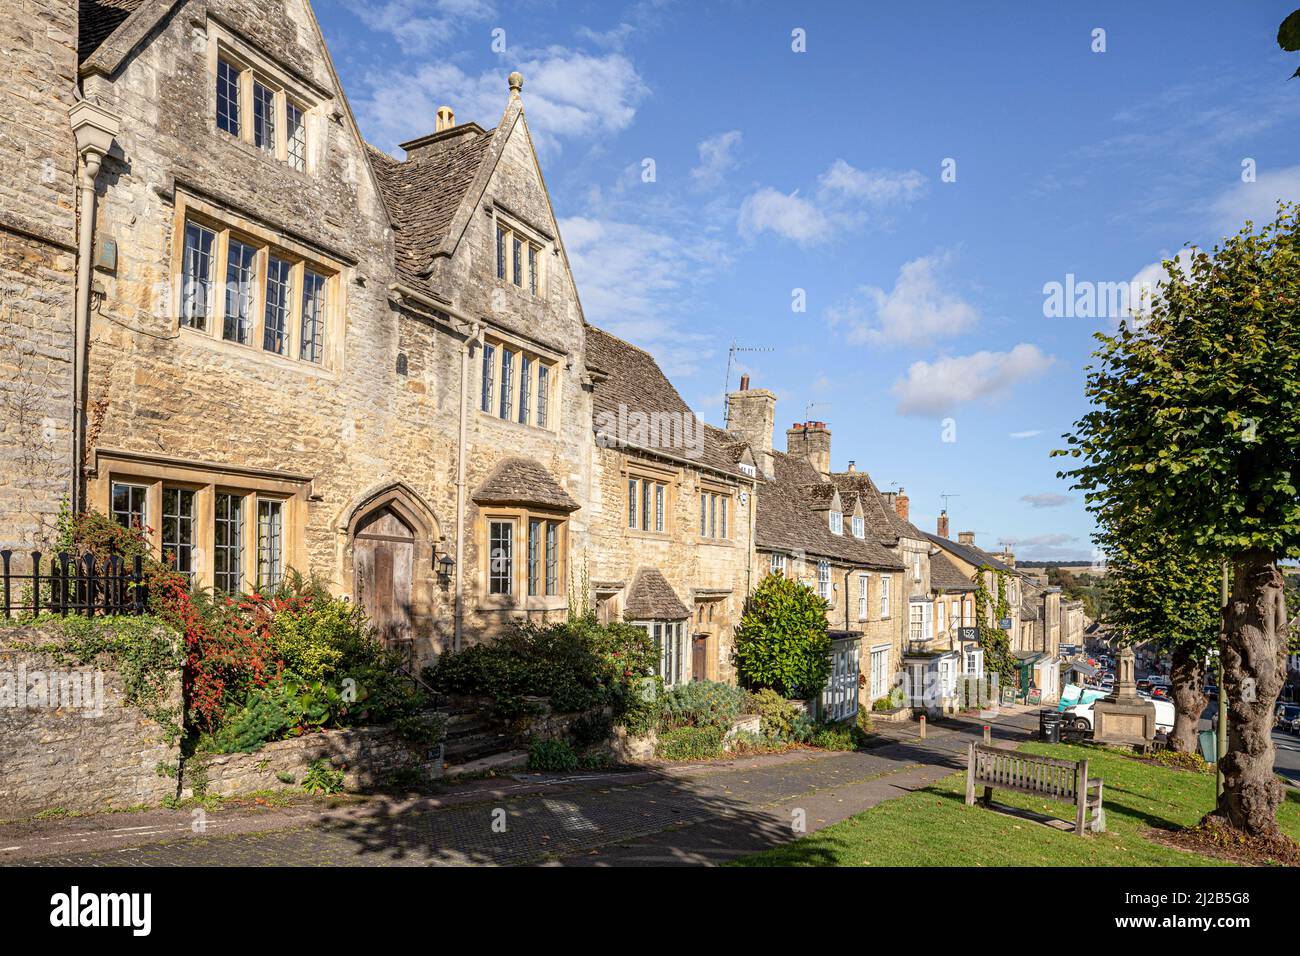 Bâtiments traditionnels typiques en pierre sur la colline dans la ville de Burford, Oxfordshire, Angleterre Banque D'Images